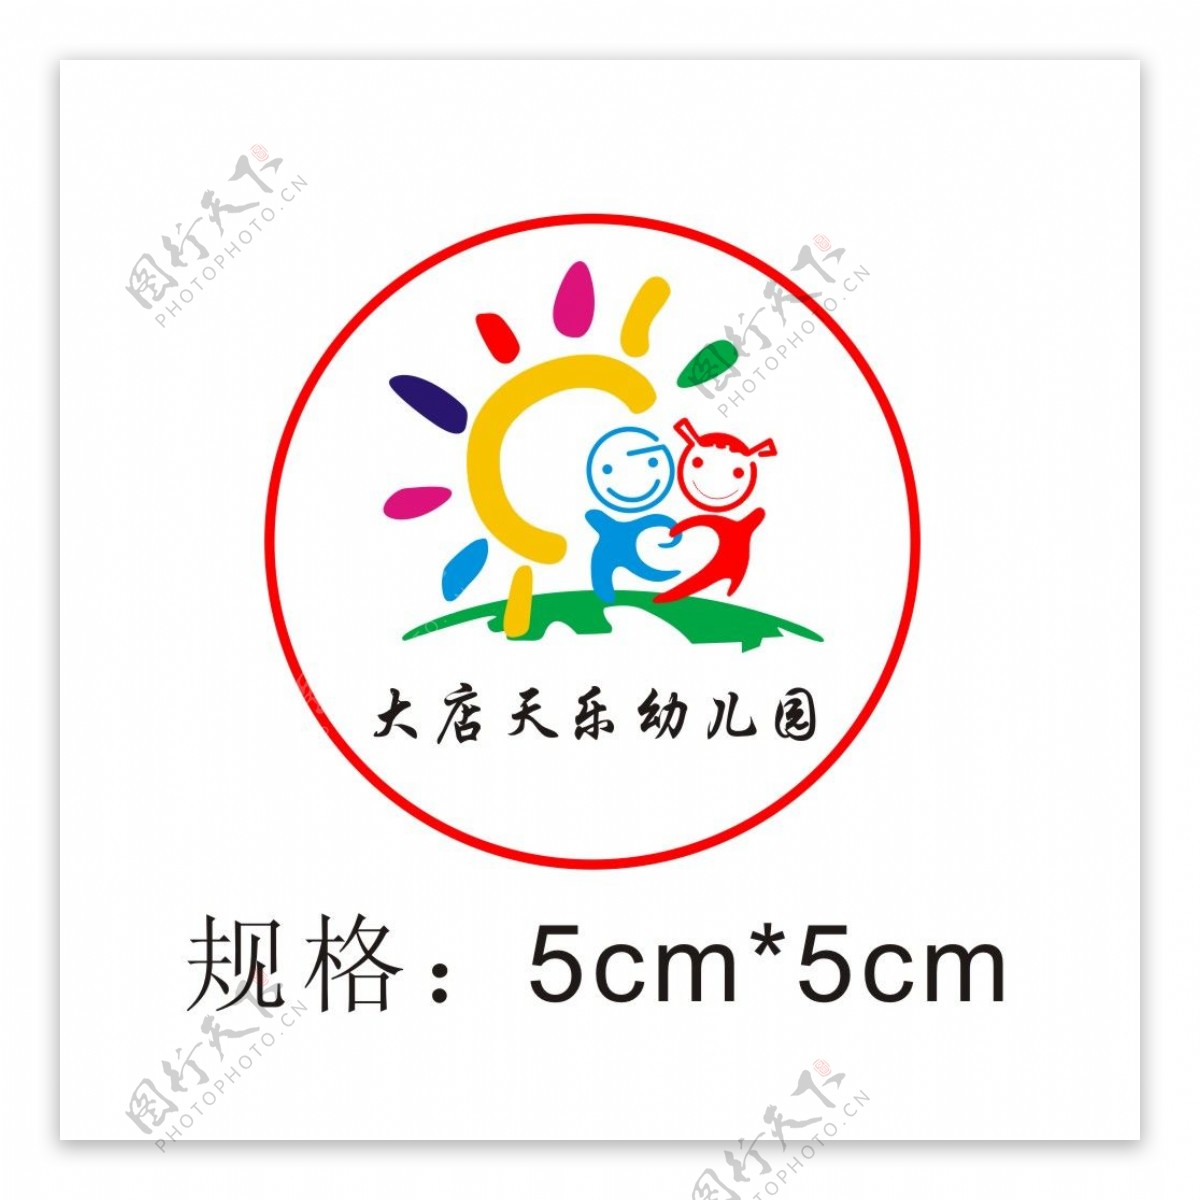 大店天乐幼儿园园徽logo